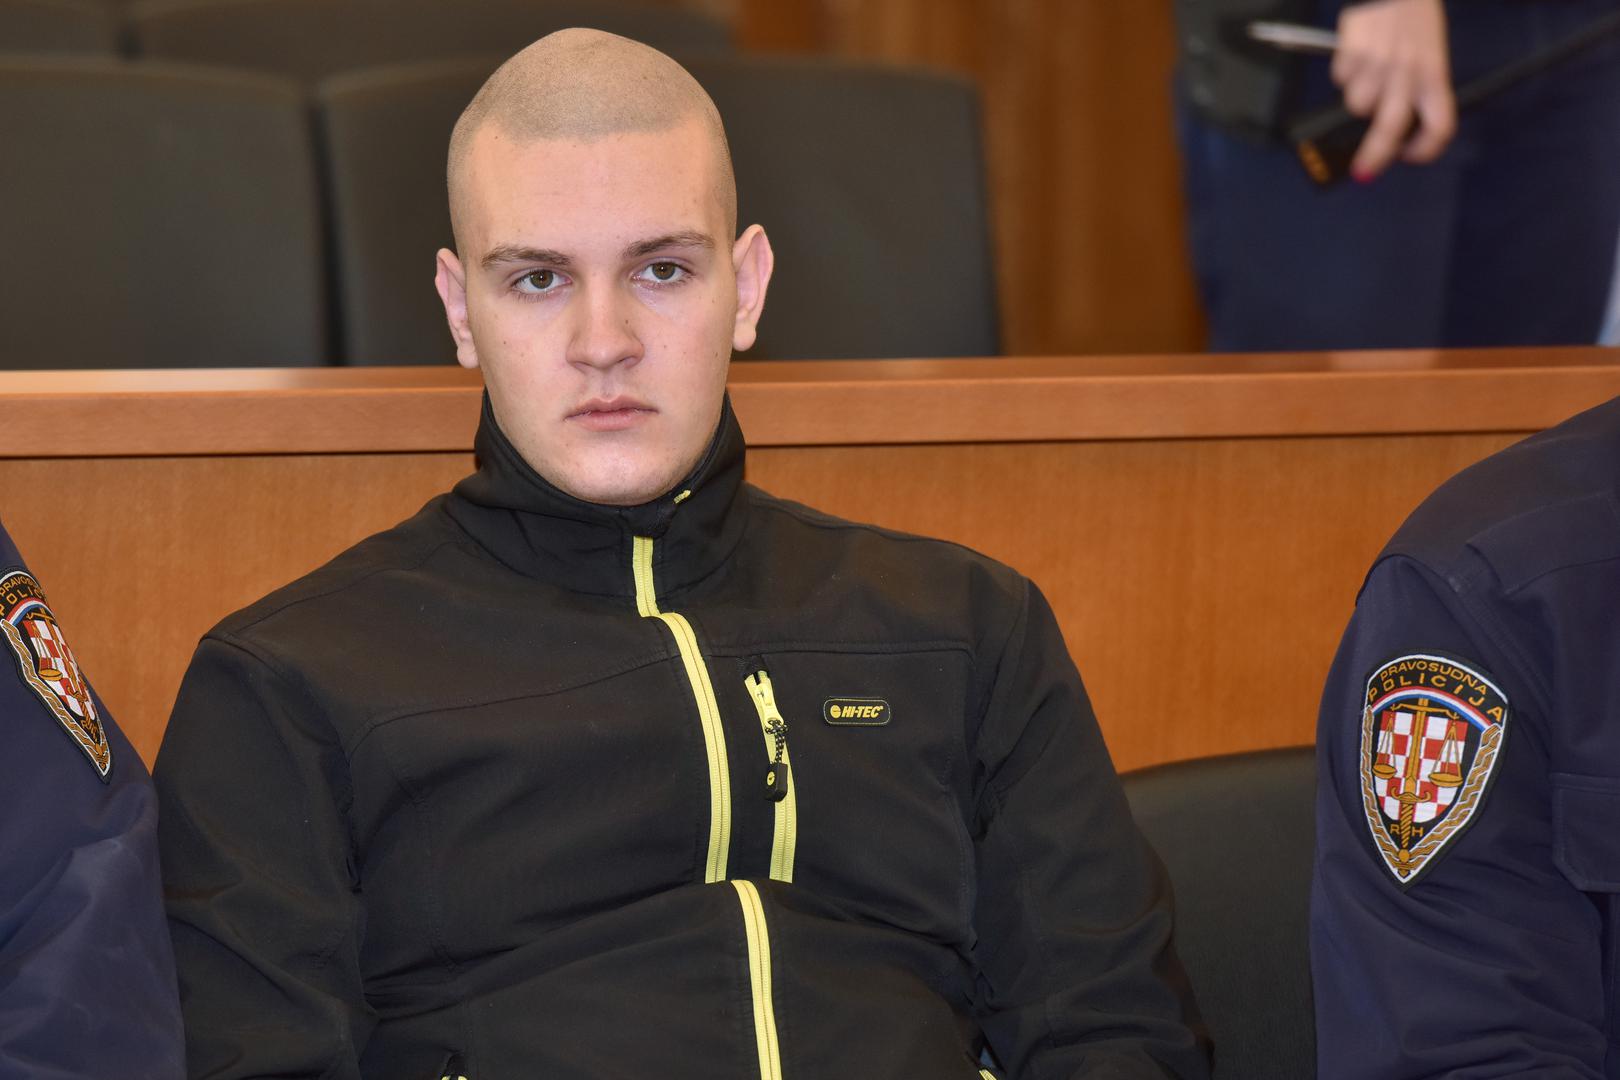 Tin Šunjerga danas je osuđen na 40 godina zatvora za ubojstvo roditelja. Bio je to zločin koji je šokirao hrvatsku javnost.